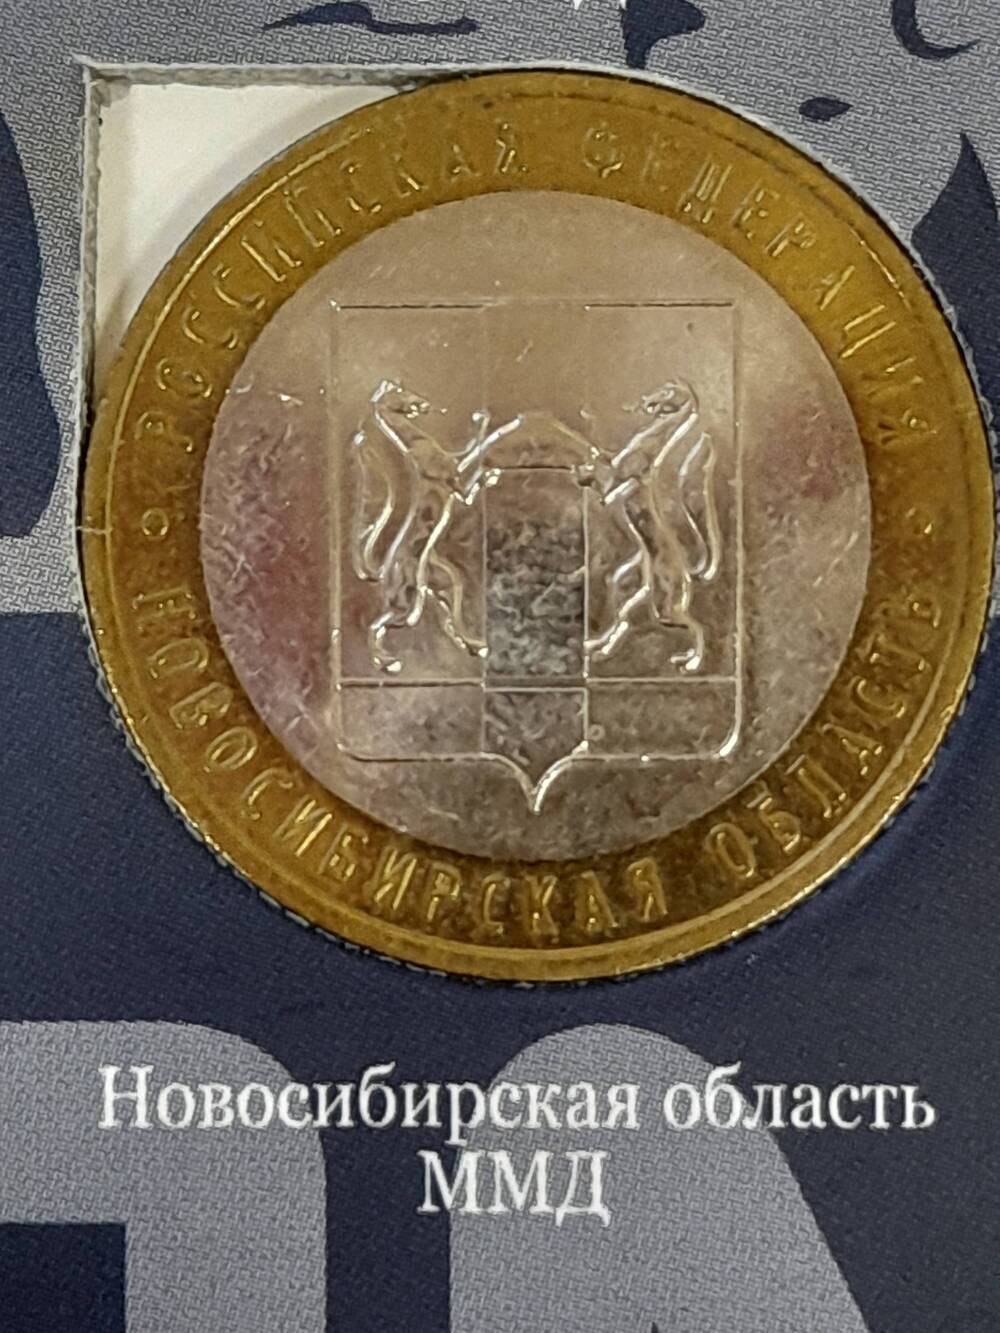 Монета памятная 10 РУБЛЕЙ. Новосибирская область 2007 г. Россия